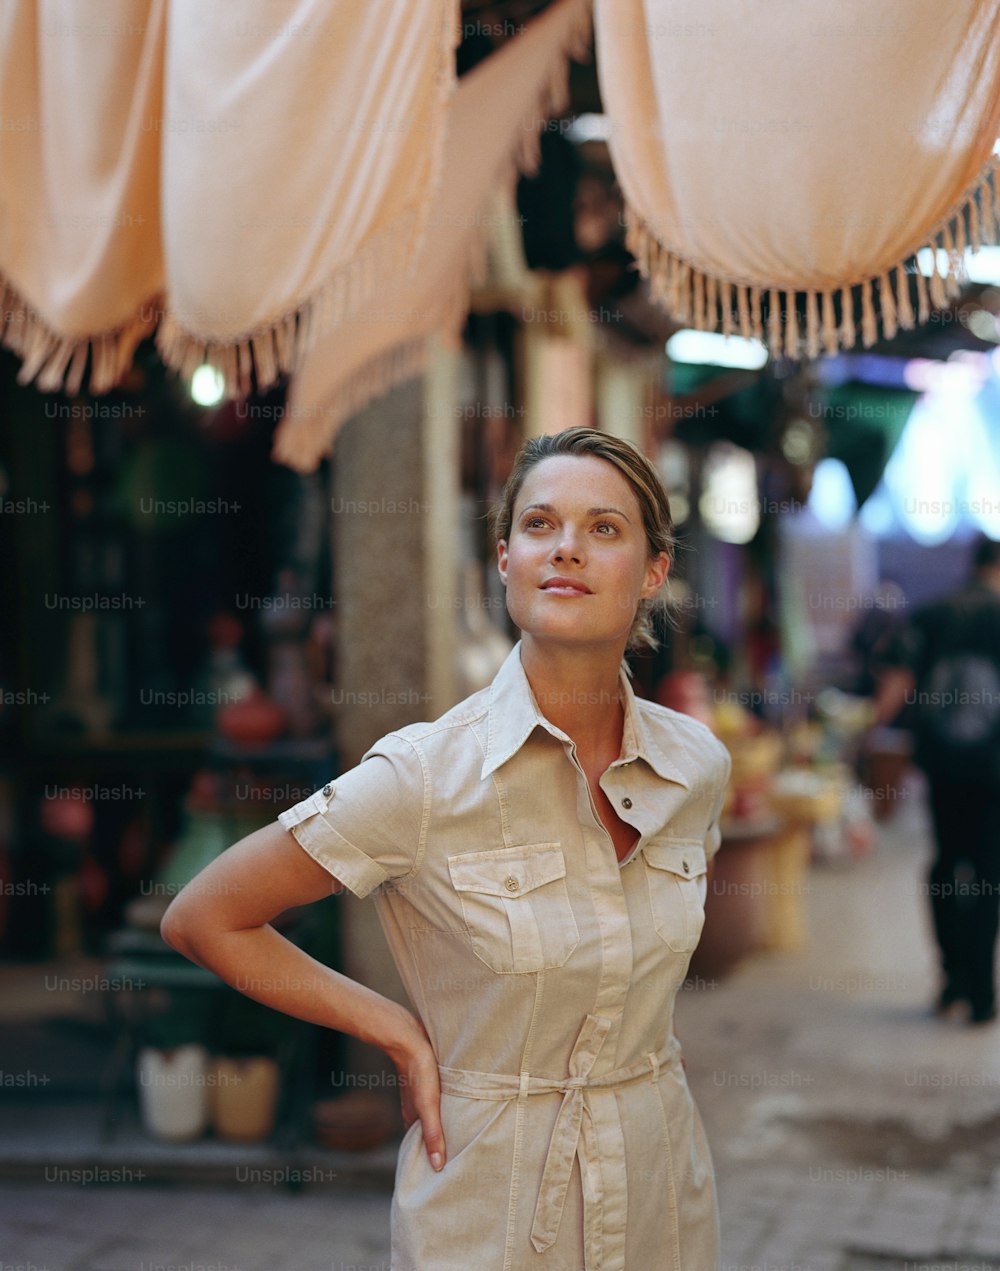 Una mujer parada frente a una tienda con las manos en las caderas